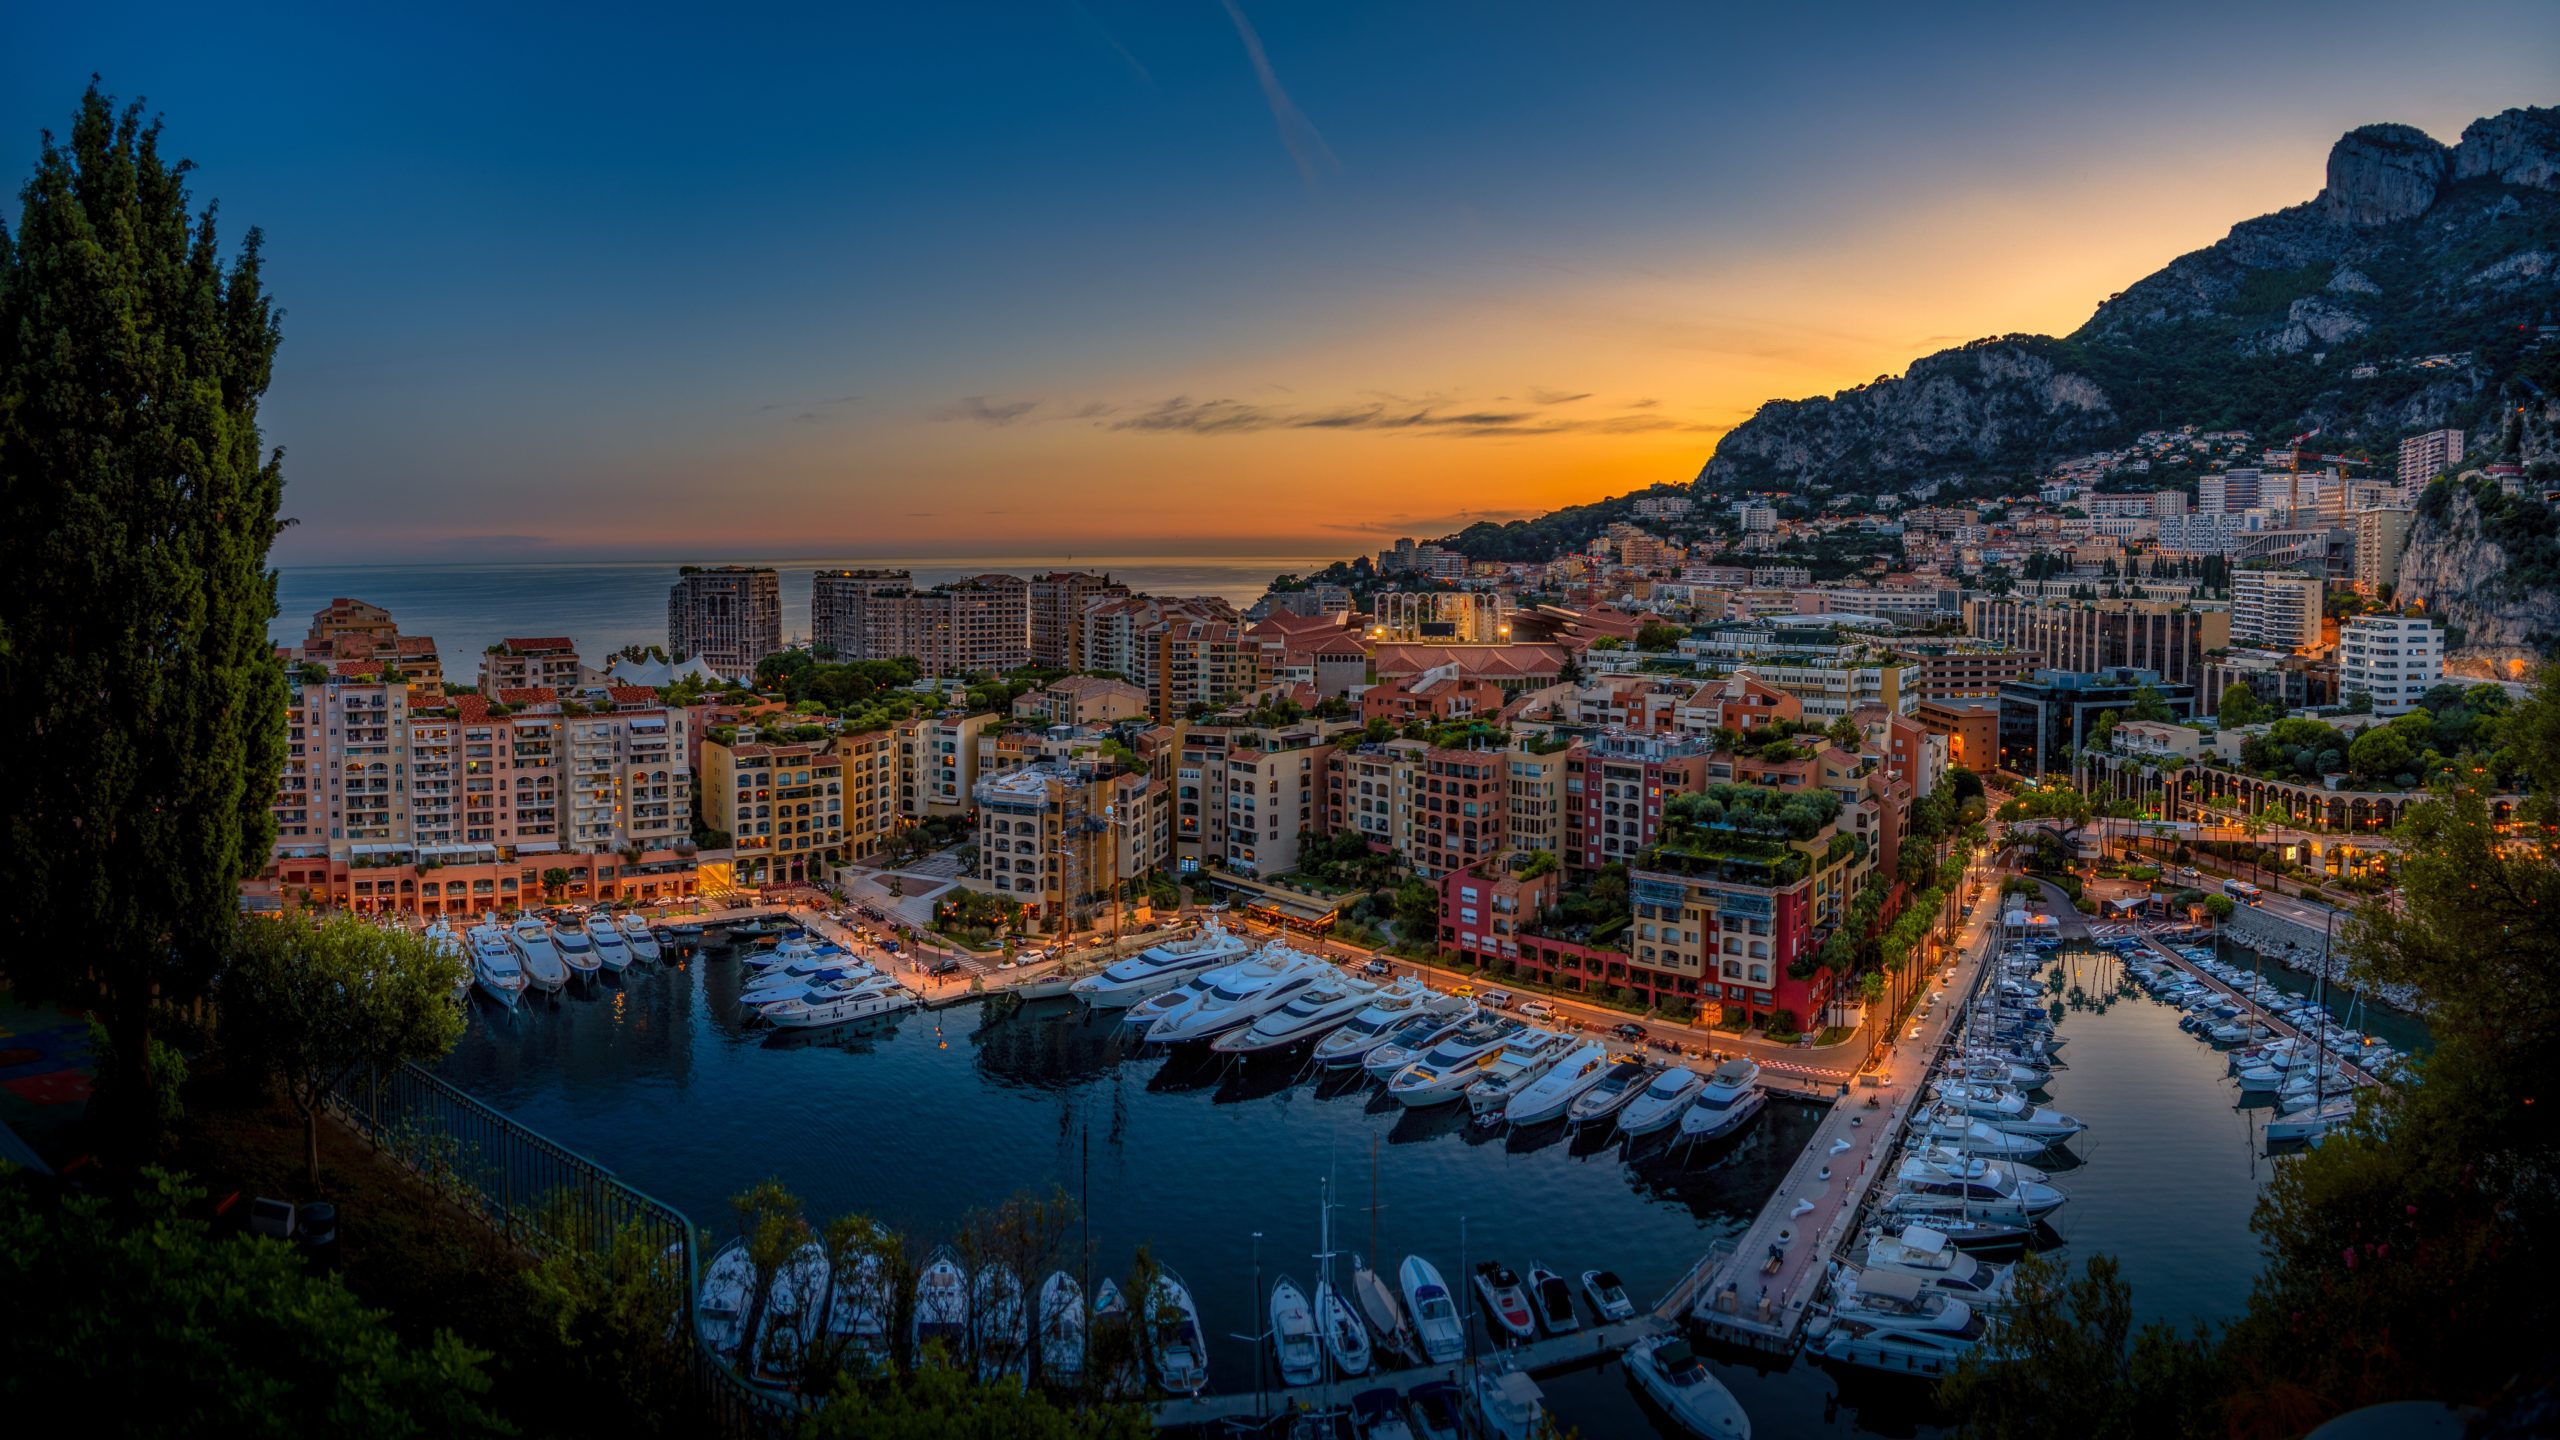 Monaco vs Monte-Carlo - Riviera Bar Crawl Tours -French Riviera